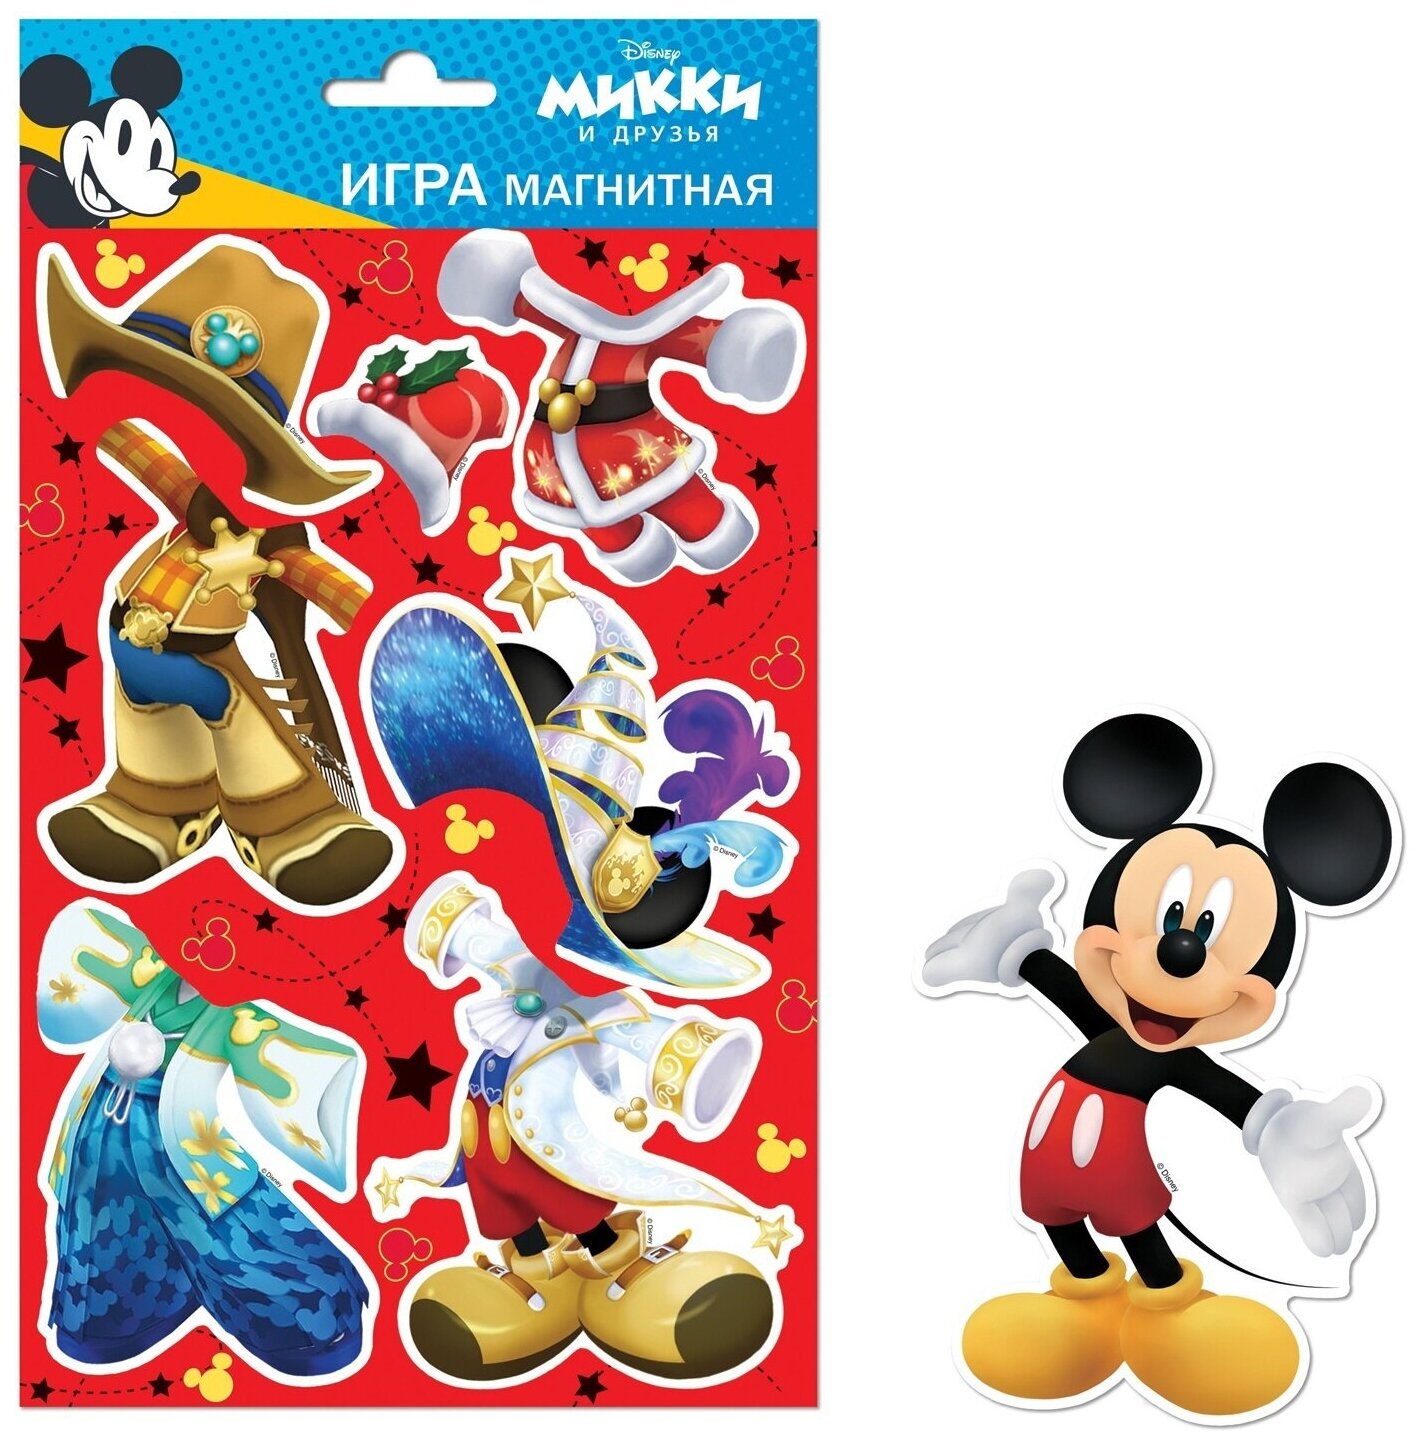 Магнитная игра ND Play "Микки Маус" с маркировкой Disney, дизайн №2, в пакете (295909)